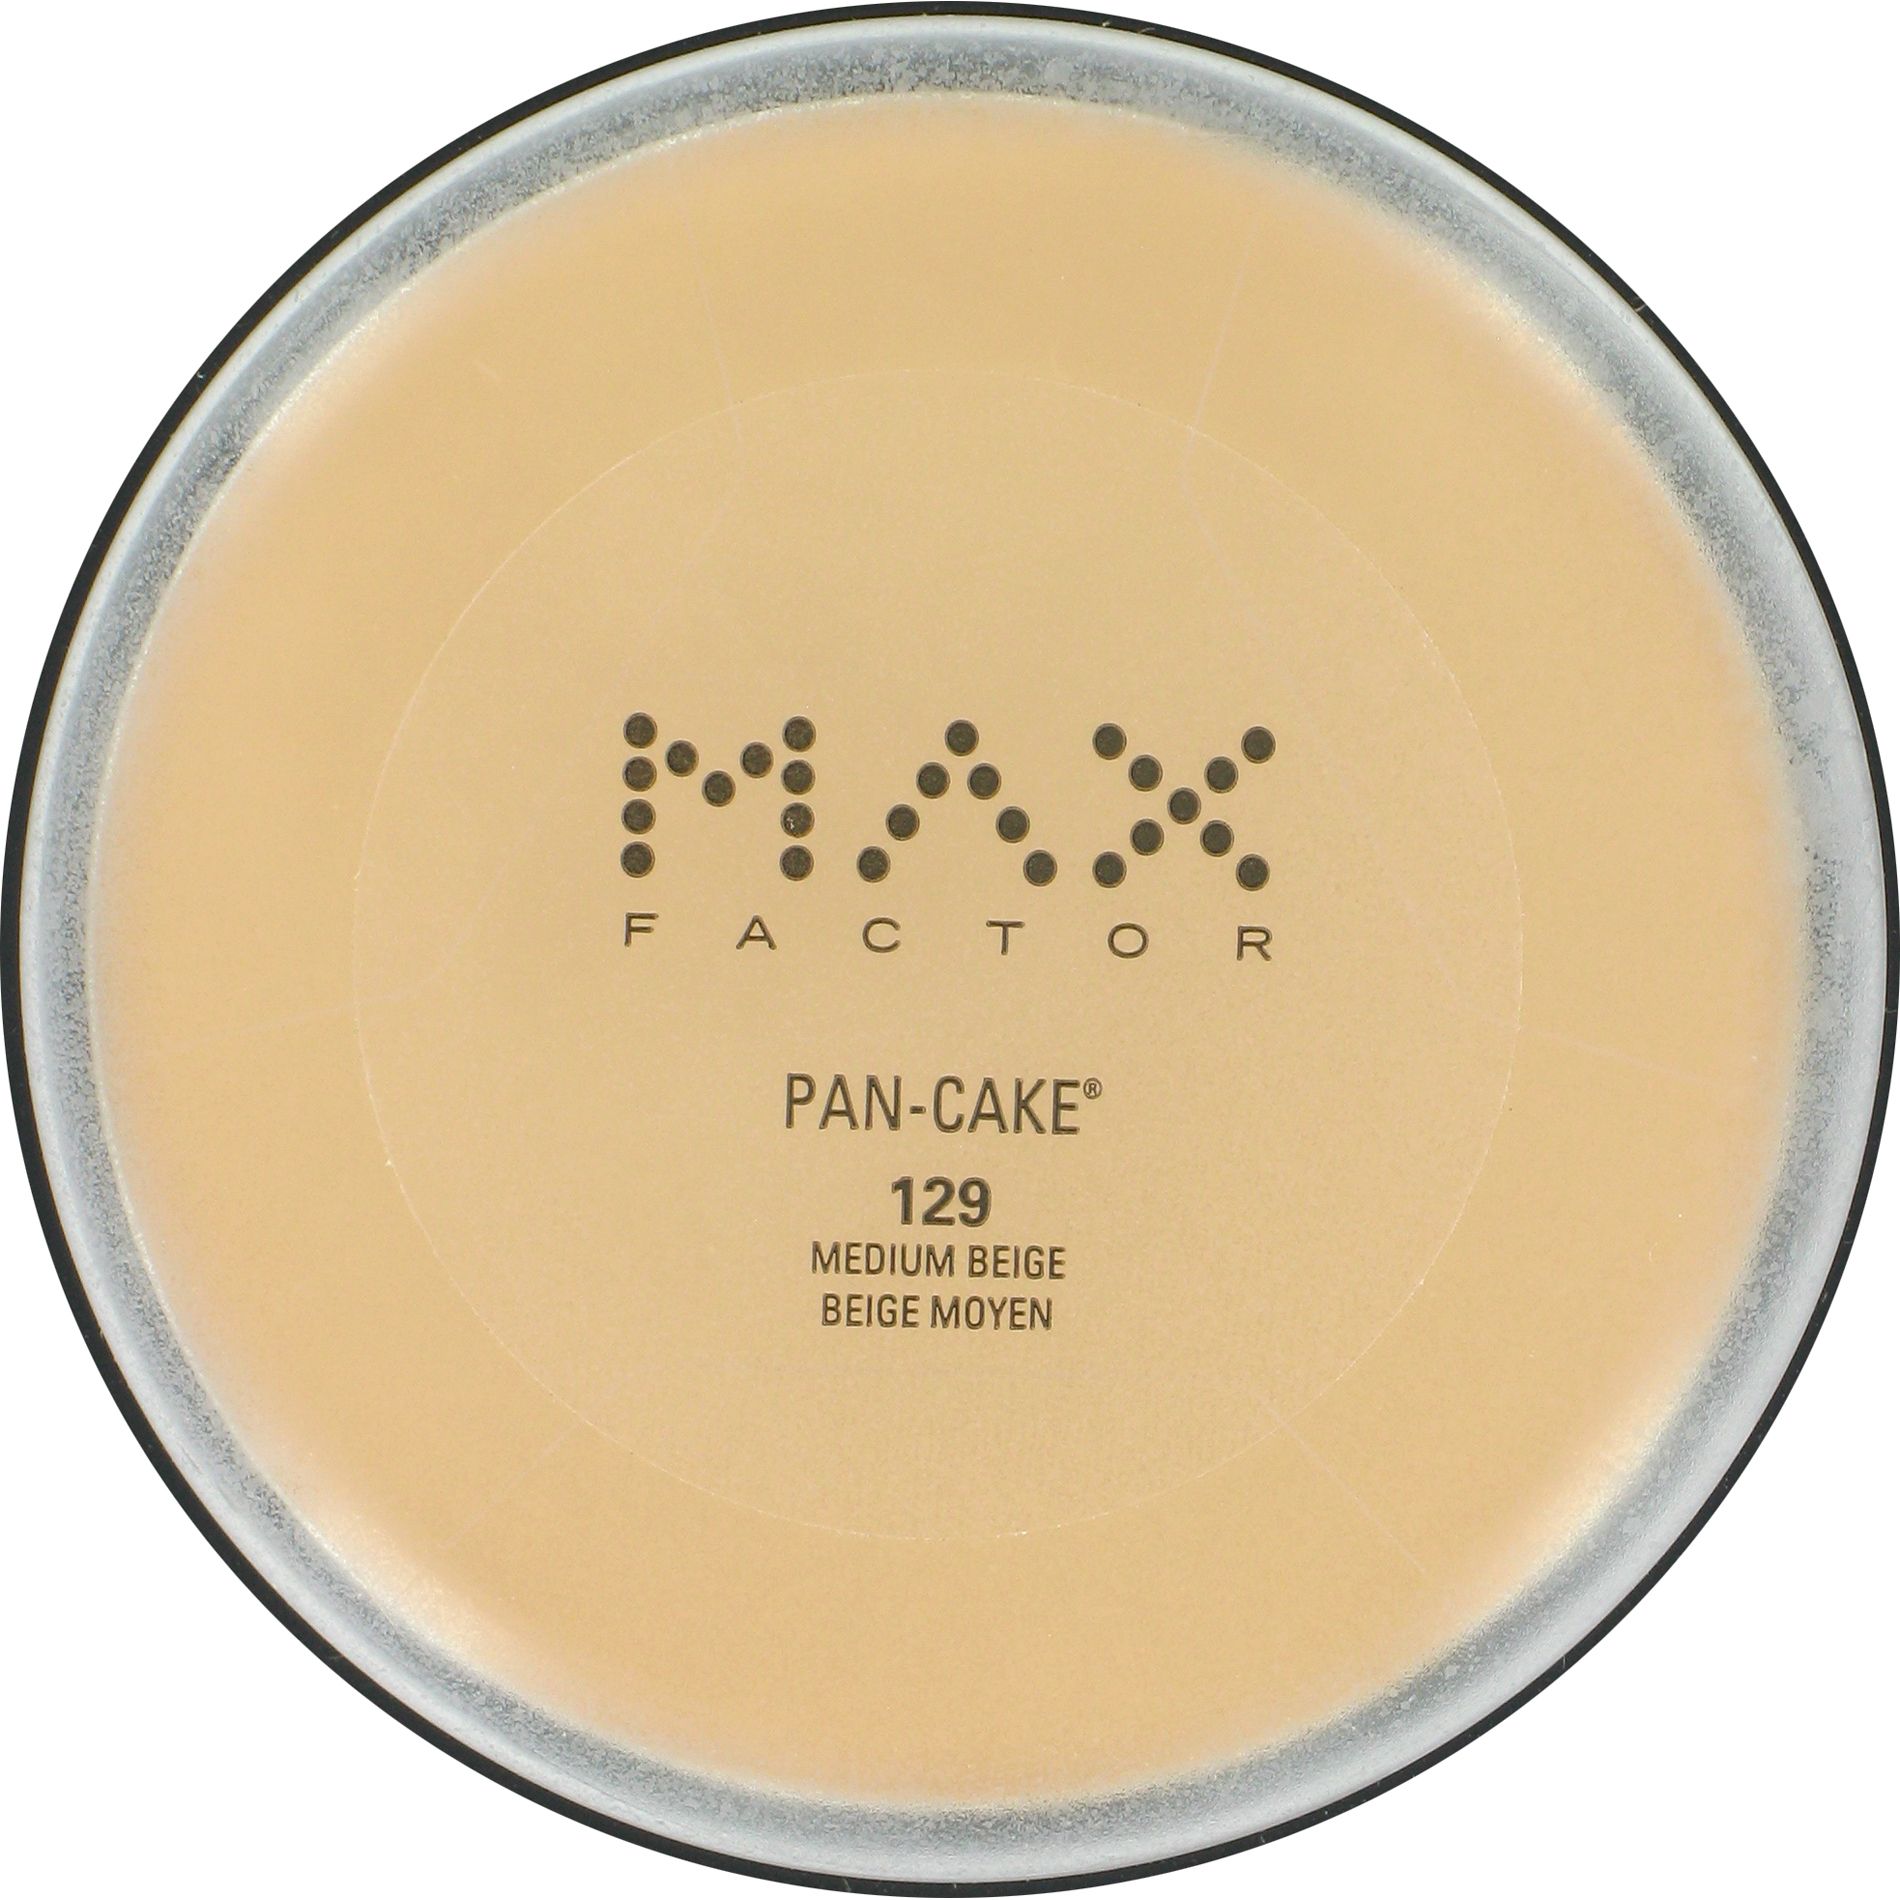 Max Factor Pan-Cake Makeup